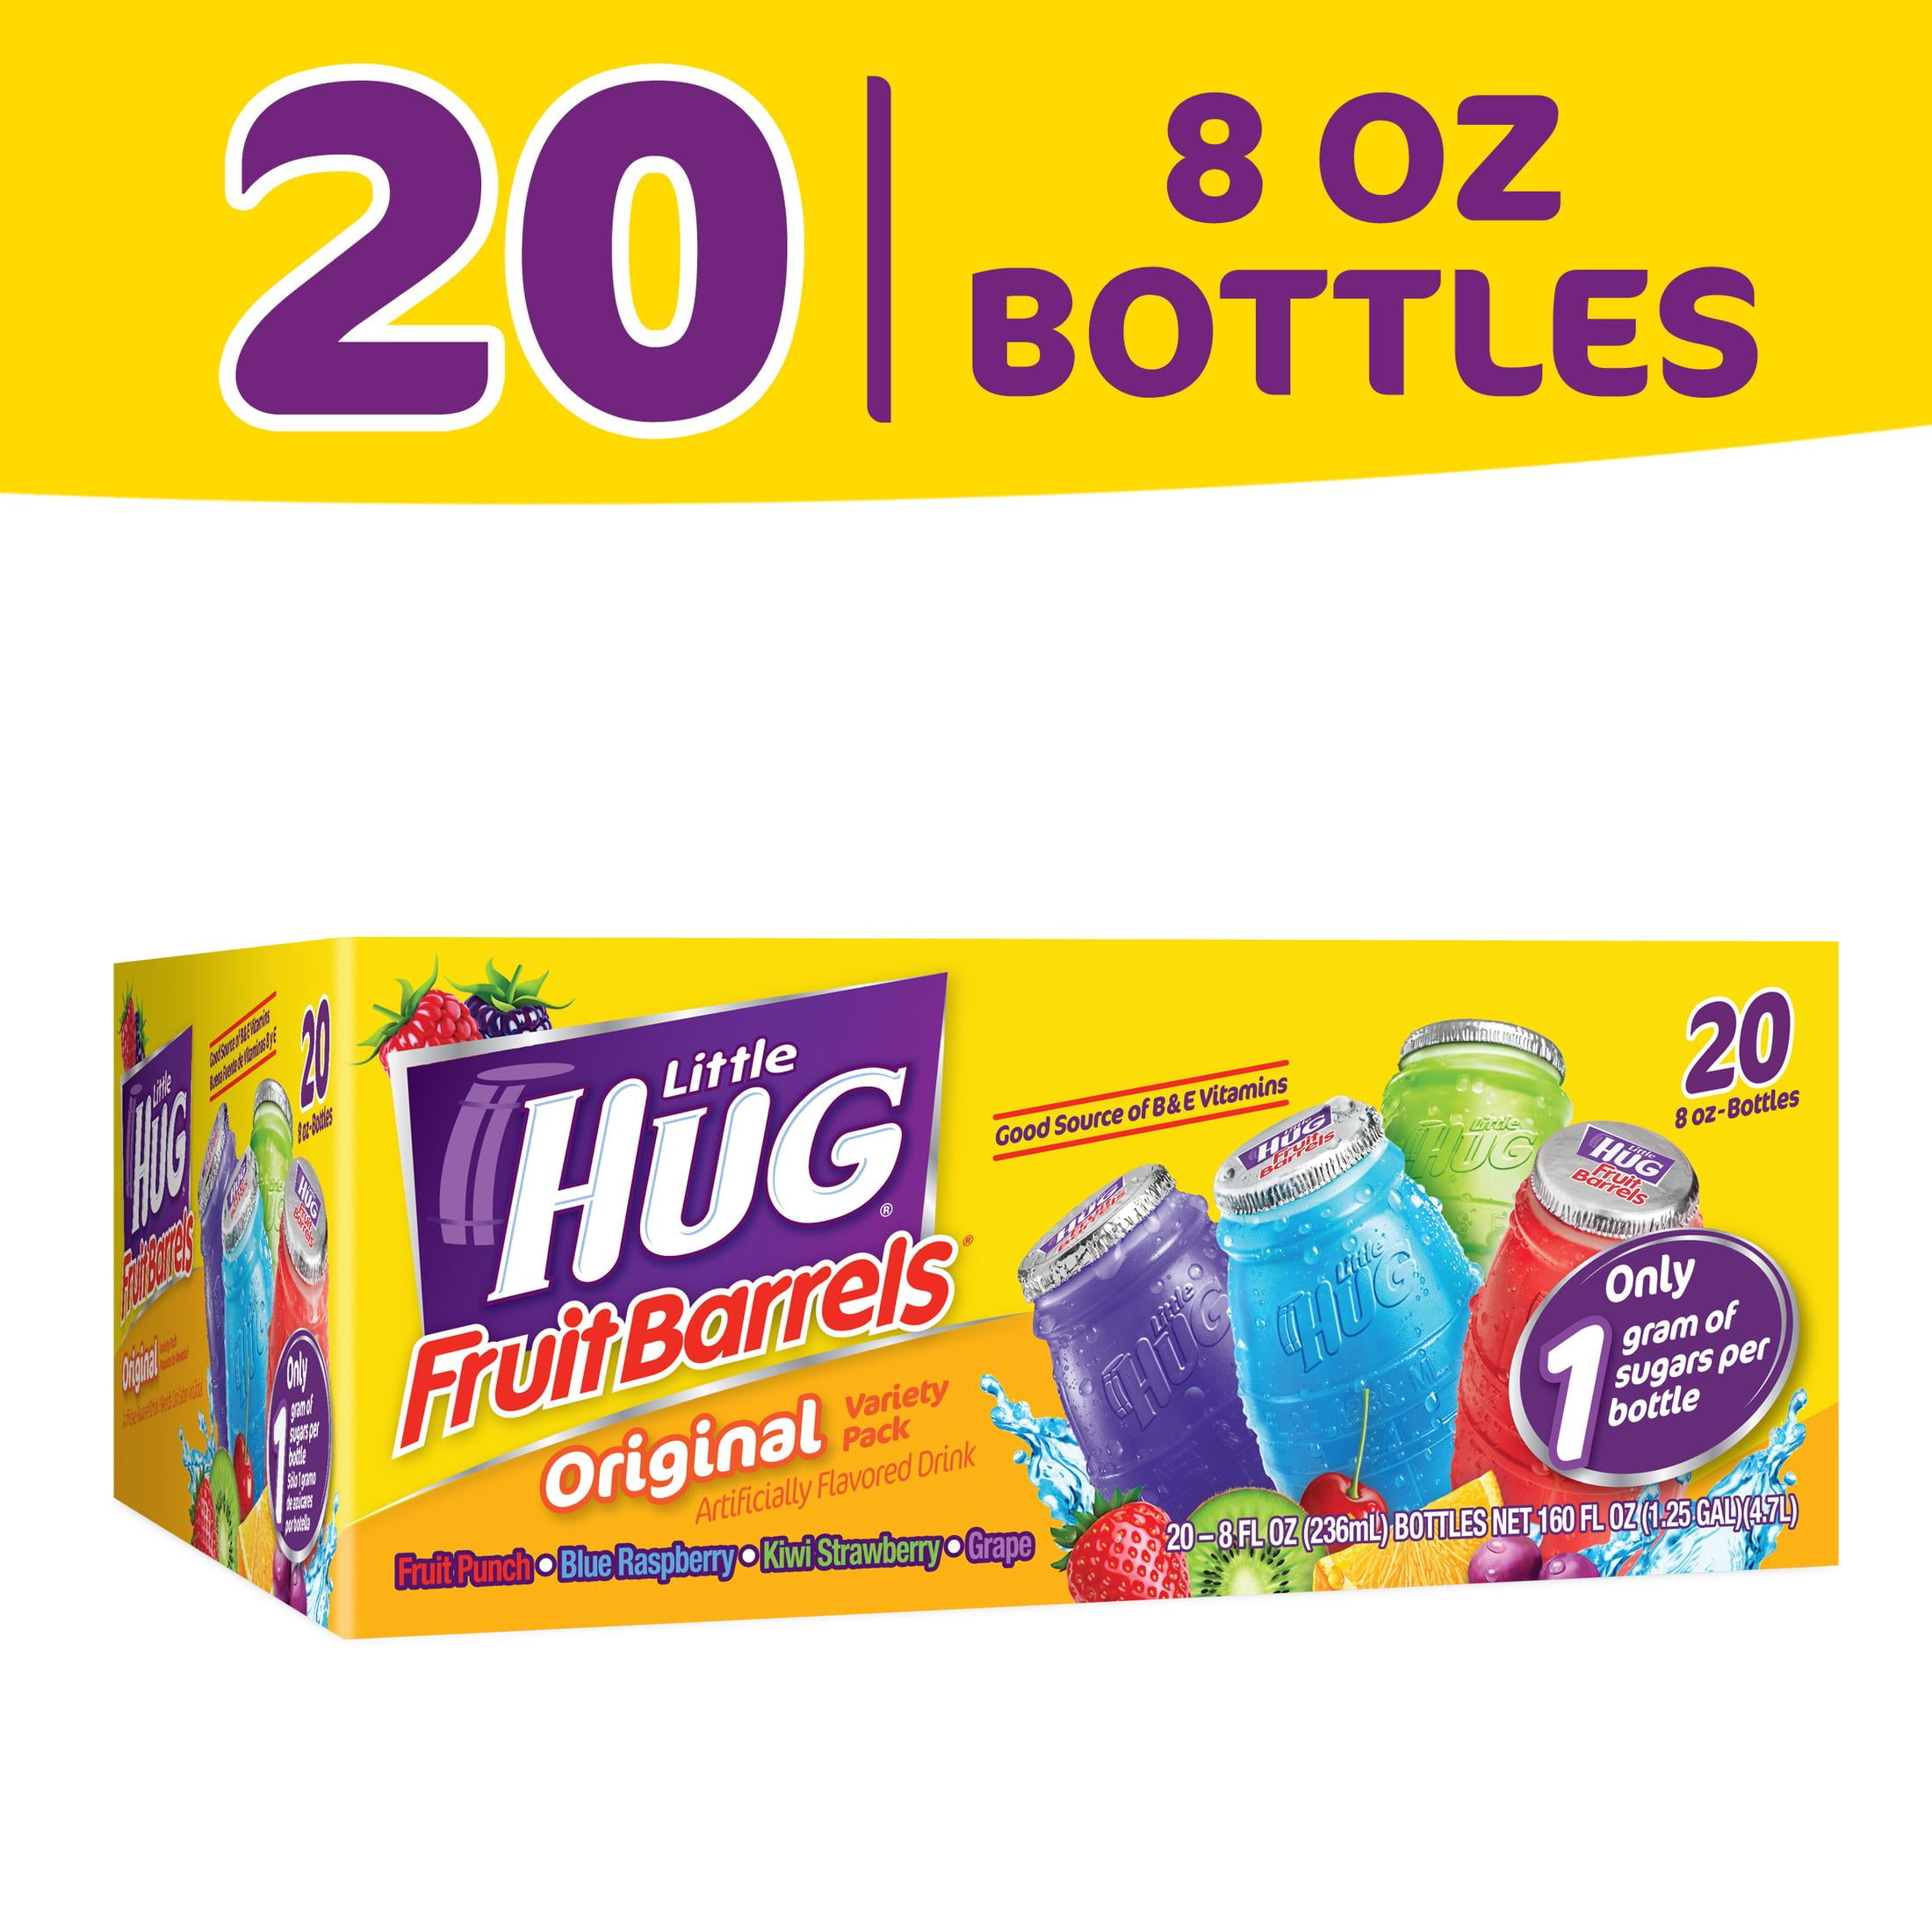 Little HUG Fruit Barrels, Original, Kids Drinks Variety Pack, 20 Count, 8 FL OZ Bottles